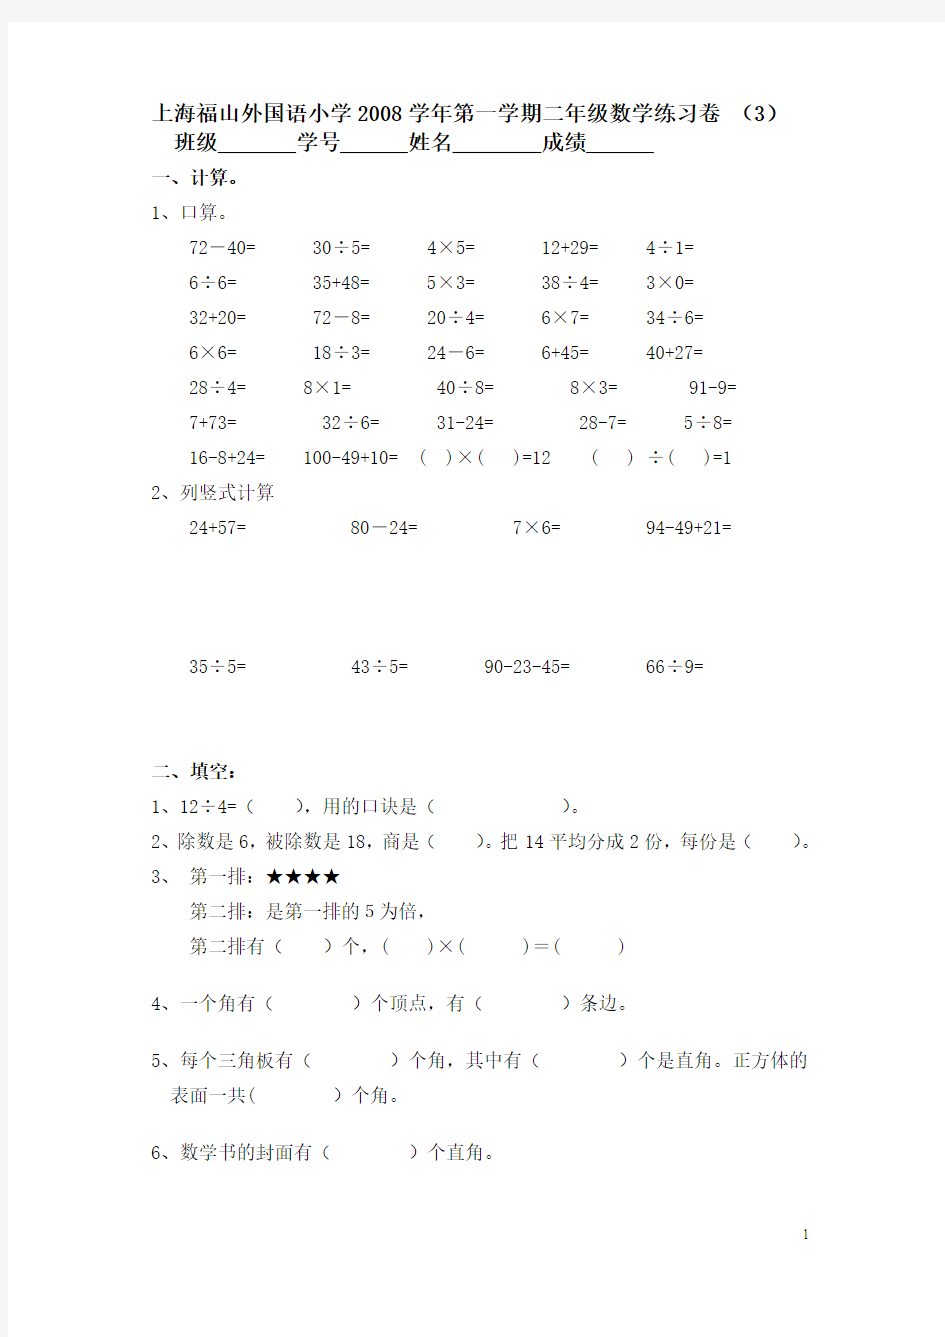 上海福山外国语小学2008学年第一学期二年级数学练习卷